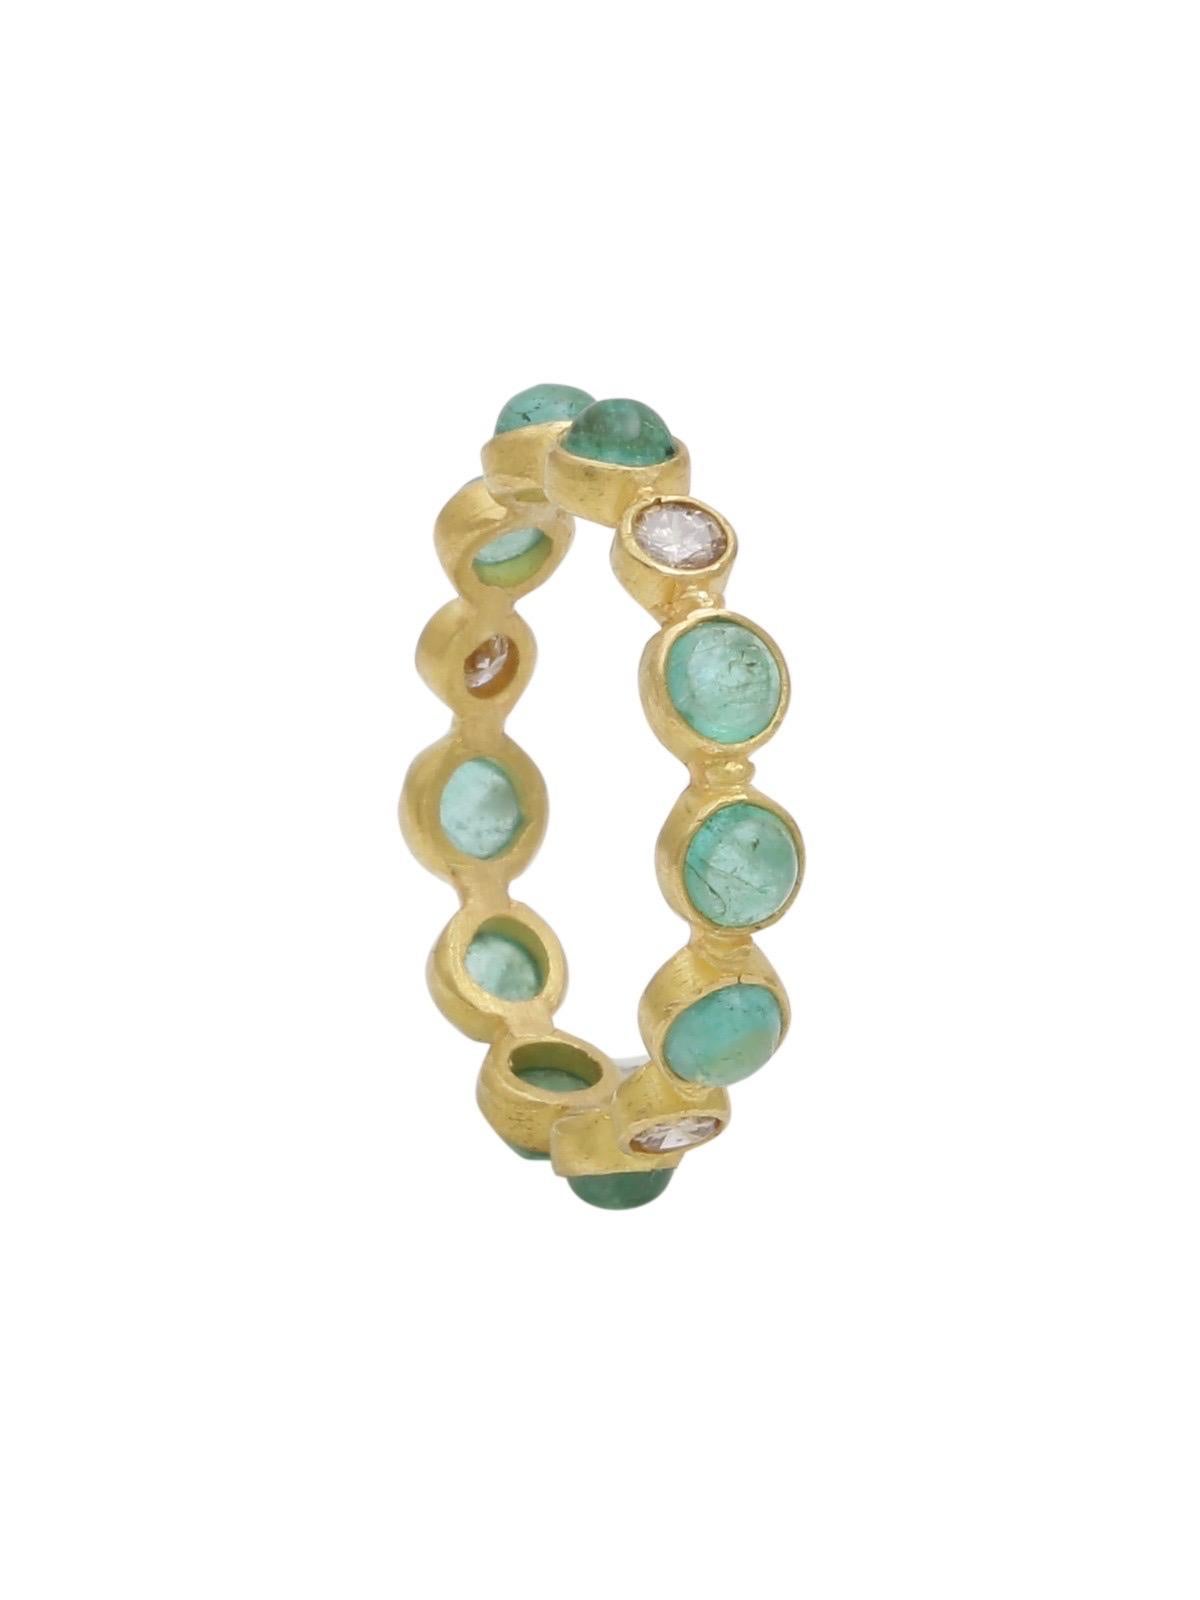 Eternity-Ring aus 22 Karat Gold mit Smaragd, Cabochon und Diamant, handgefertigt (Kunsthandwerker*in)